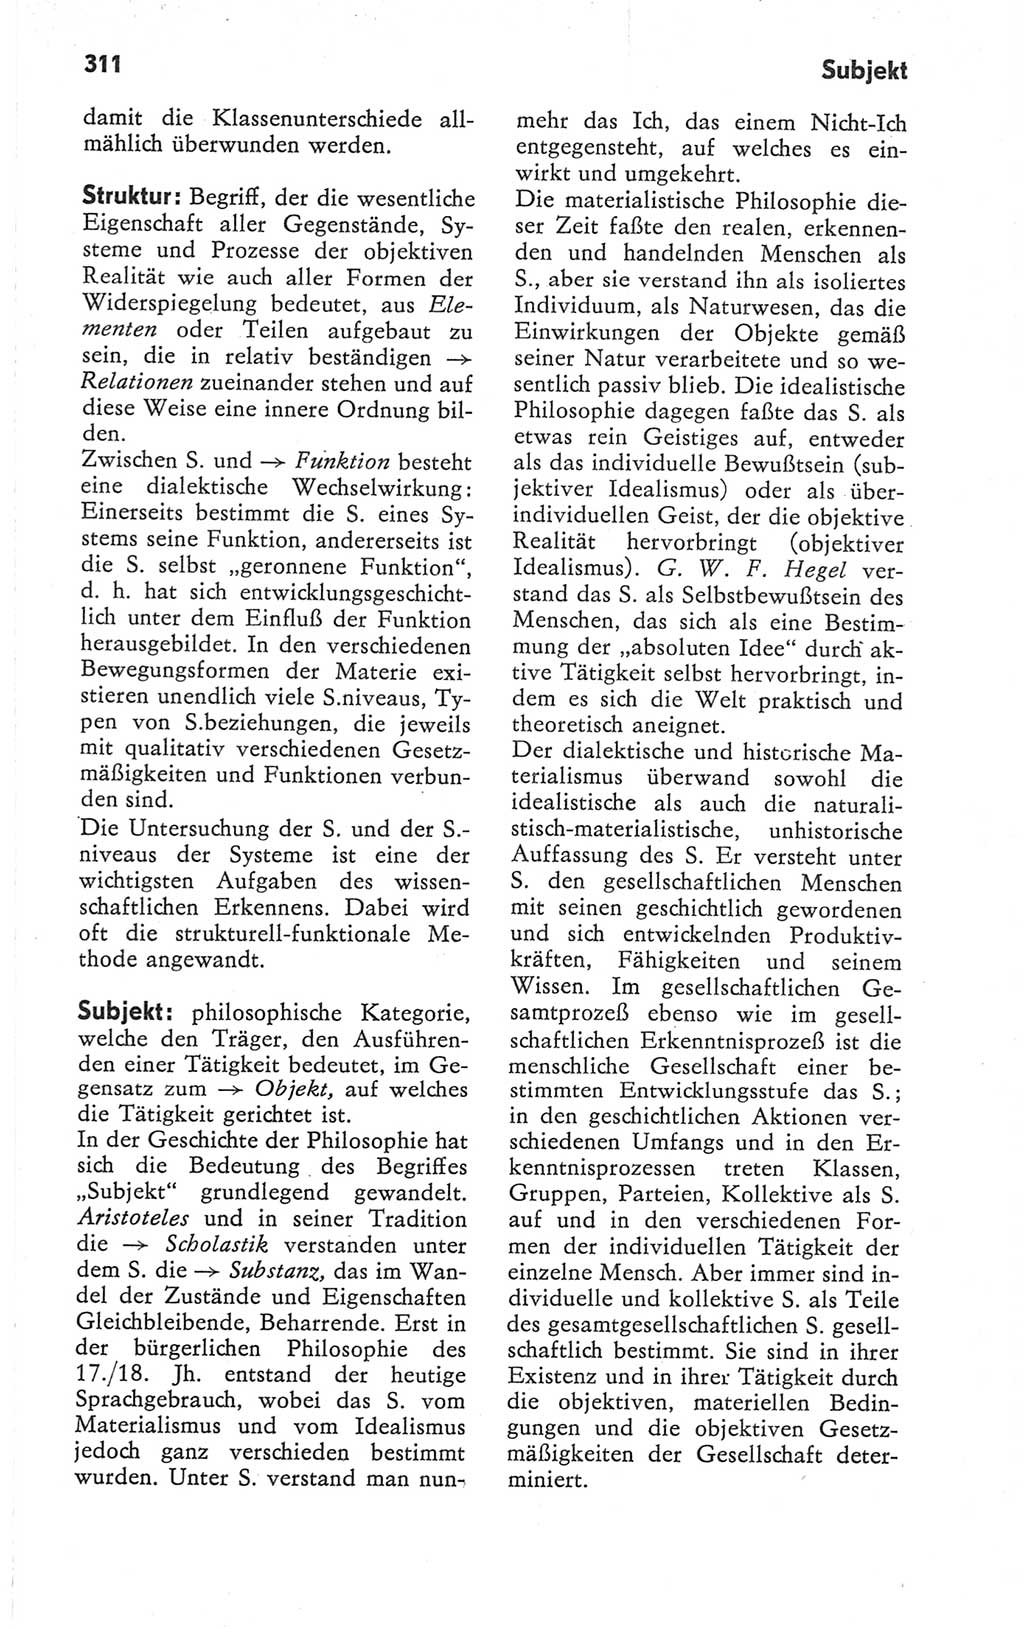 Kleines Wörterbuch der marxistisch-leninistischen Philosophie [Deutsche Demokratische Republik (DDR)] 1979, Seite 311 (Kl. Wb. ML Phil. DDR 1979, S. 311)